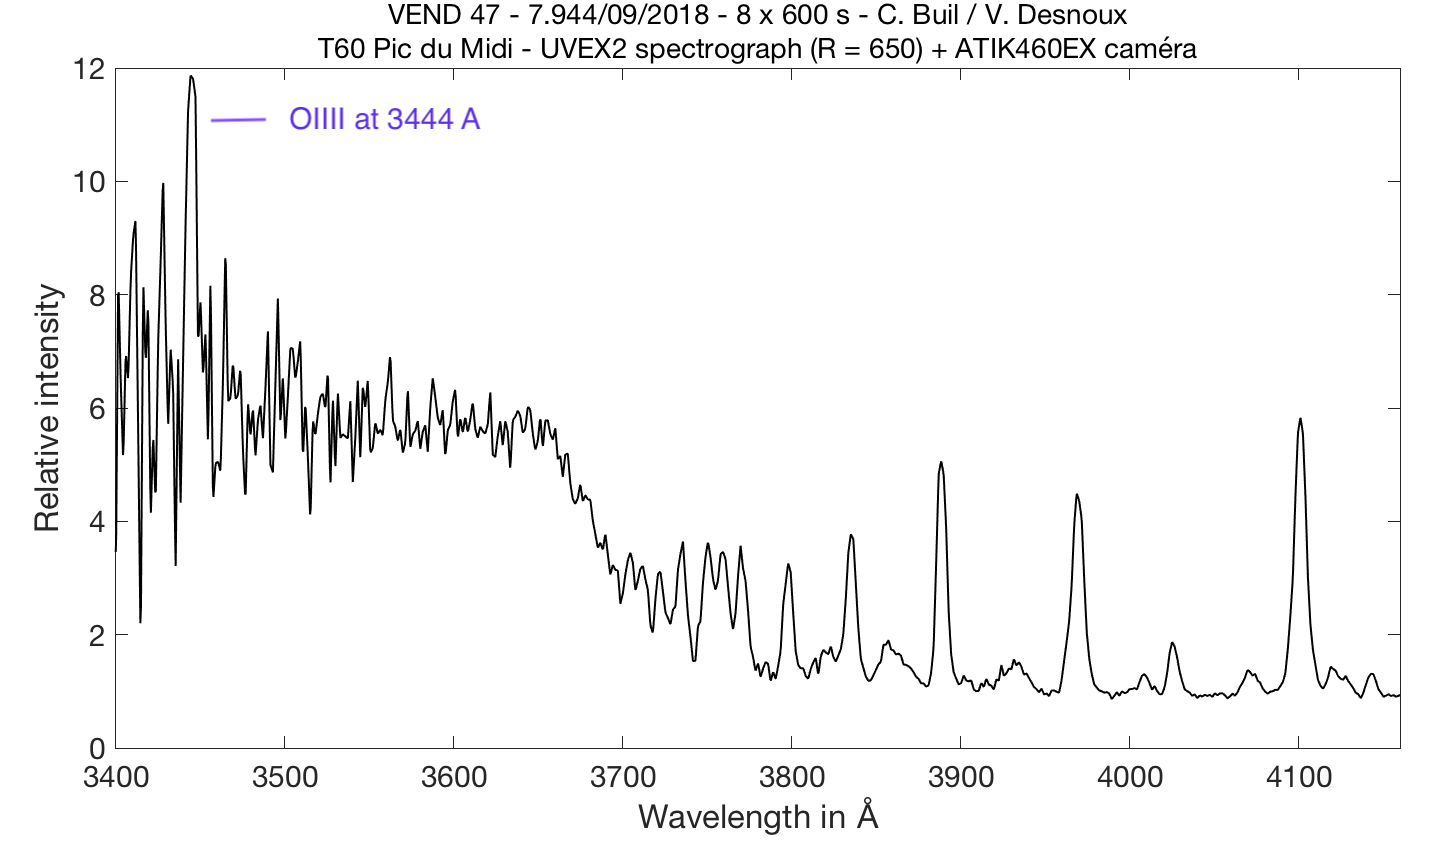 Spectro Aras Com View Topic Asassn V J 95 6 10 7v Mag In Sge